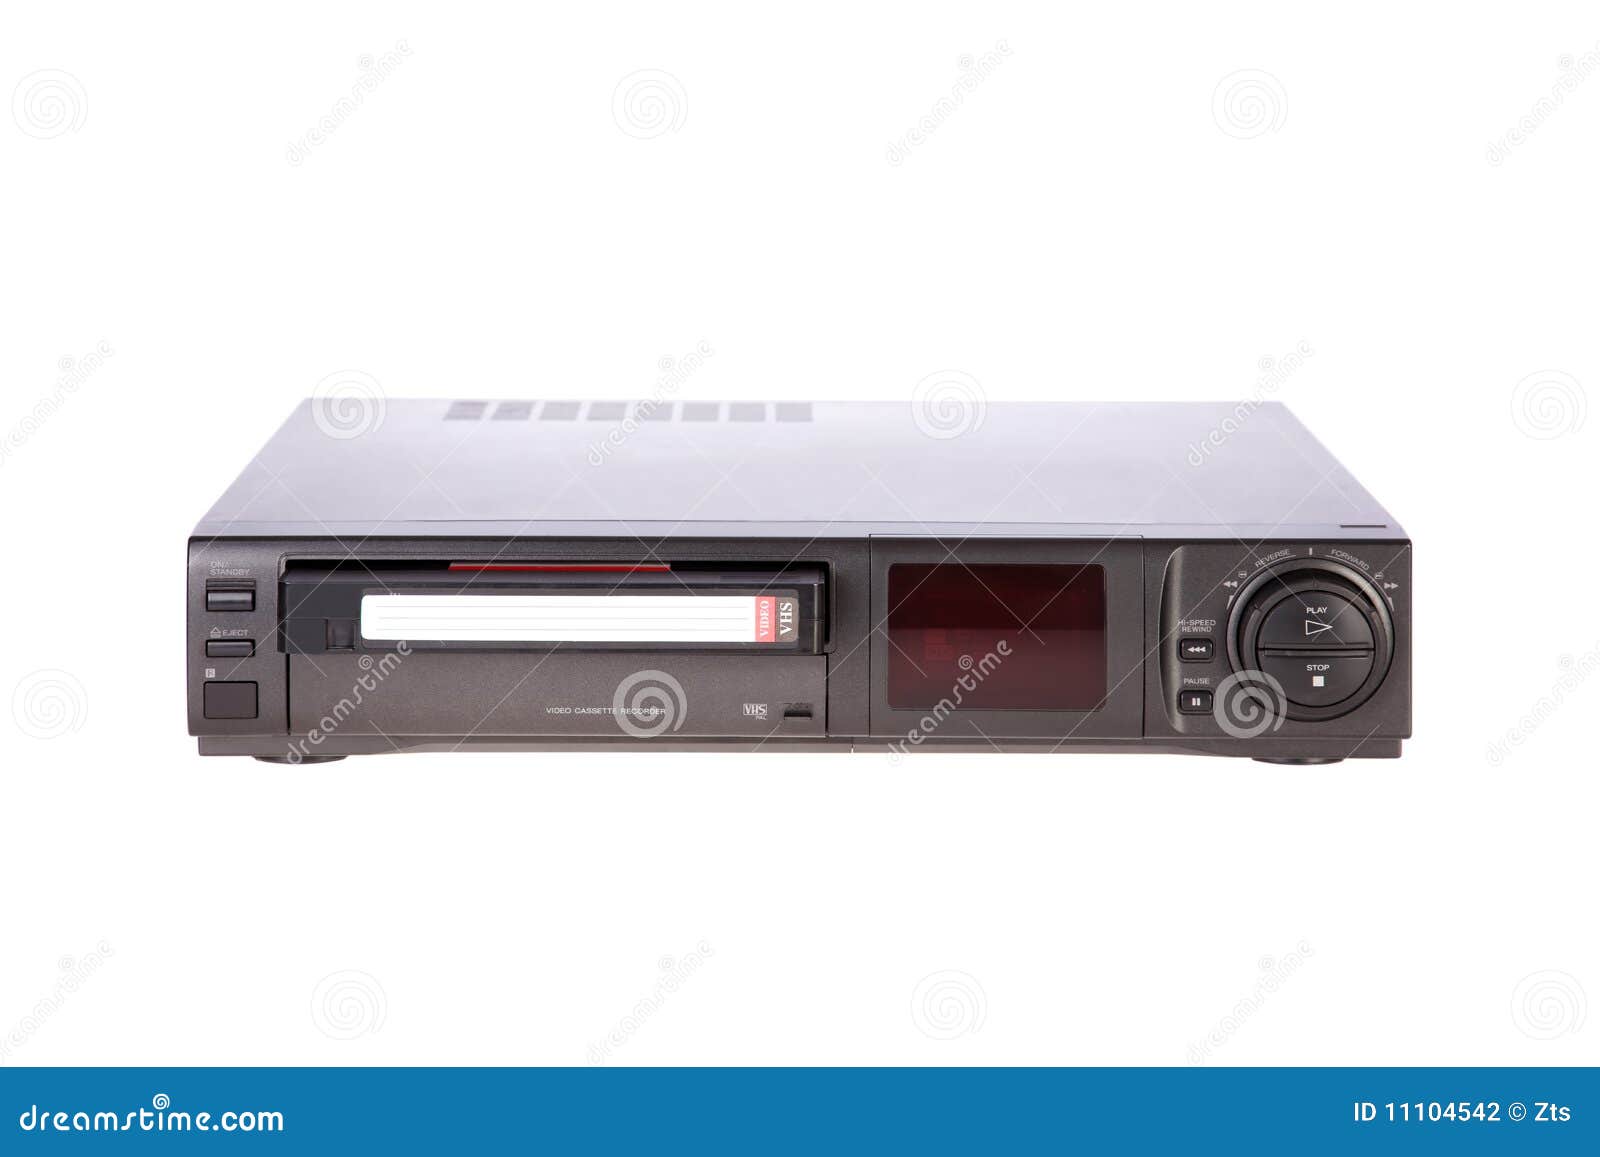 Oude VideoCassetterecorder die band uitwerpt die op witte achtergrond wordt geïsoleerd